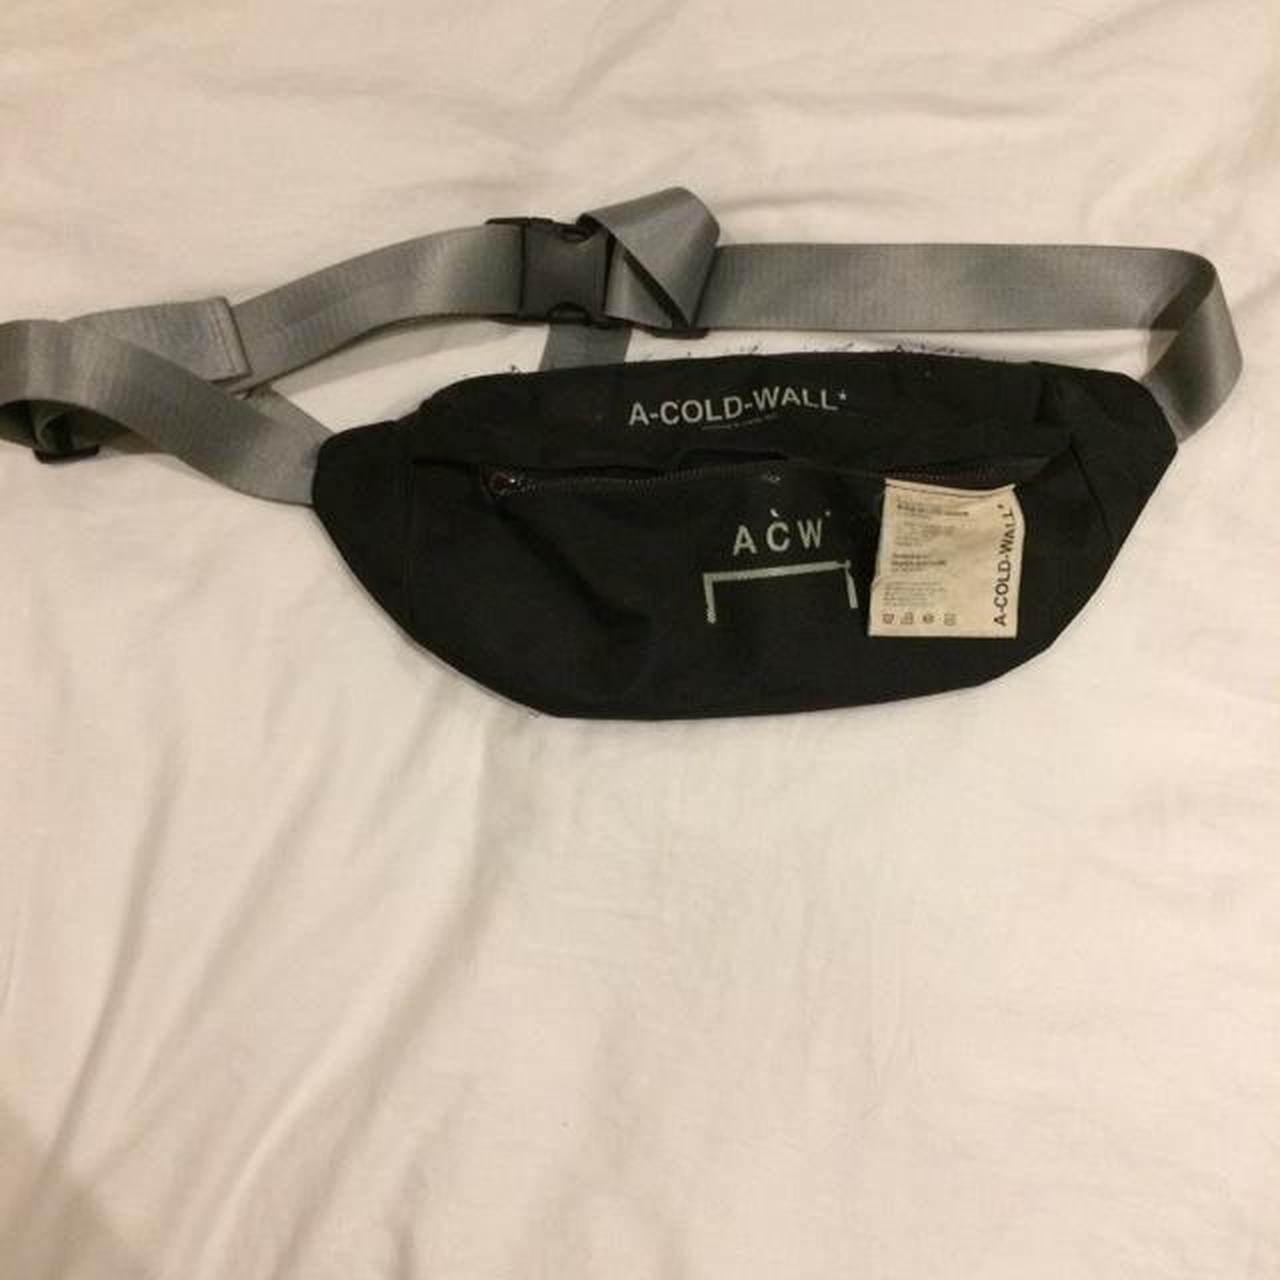 A cold wall shoulder bag bum bag. Used slightly... - Depop